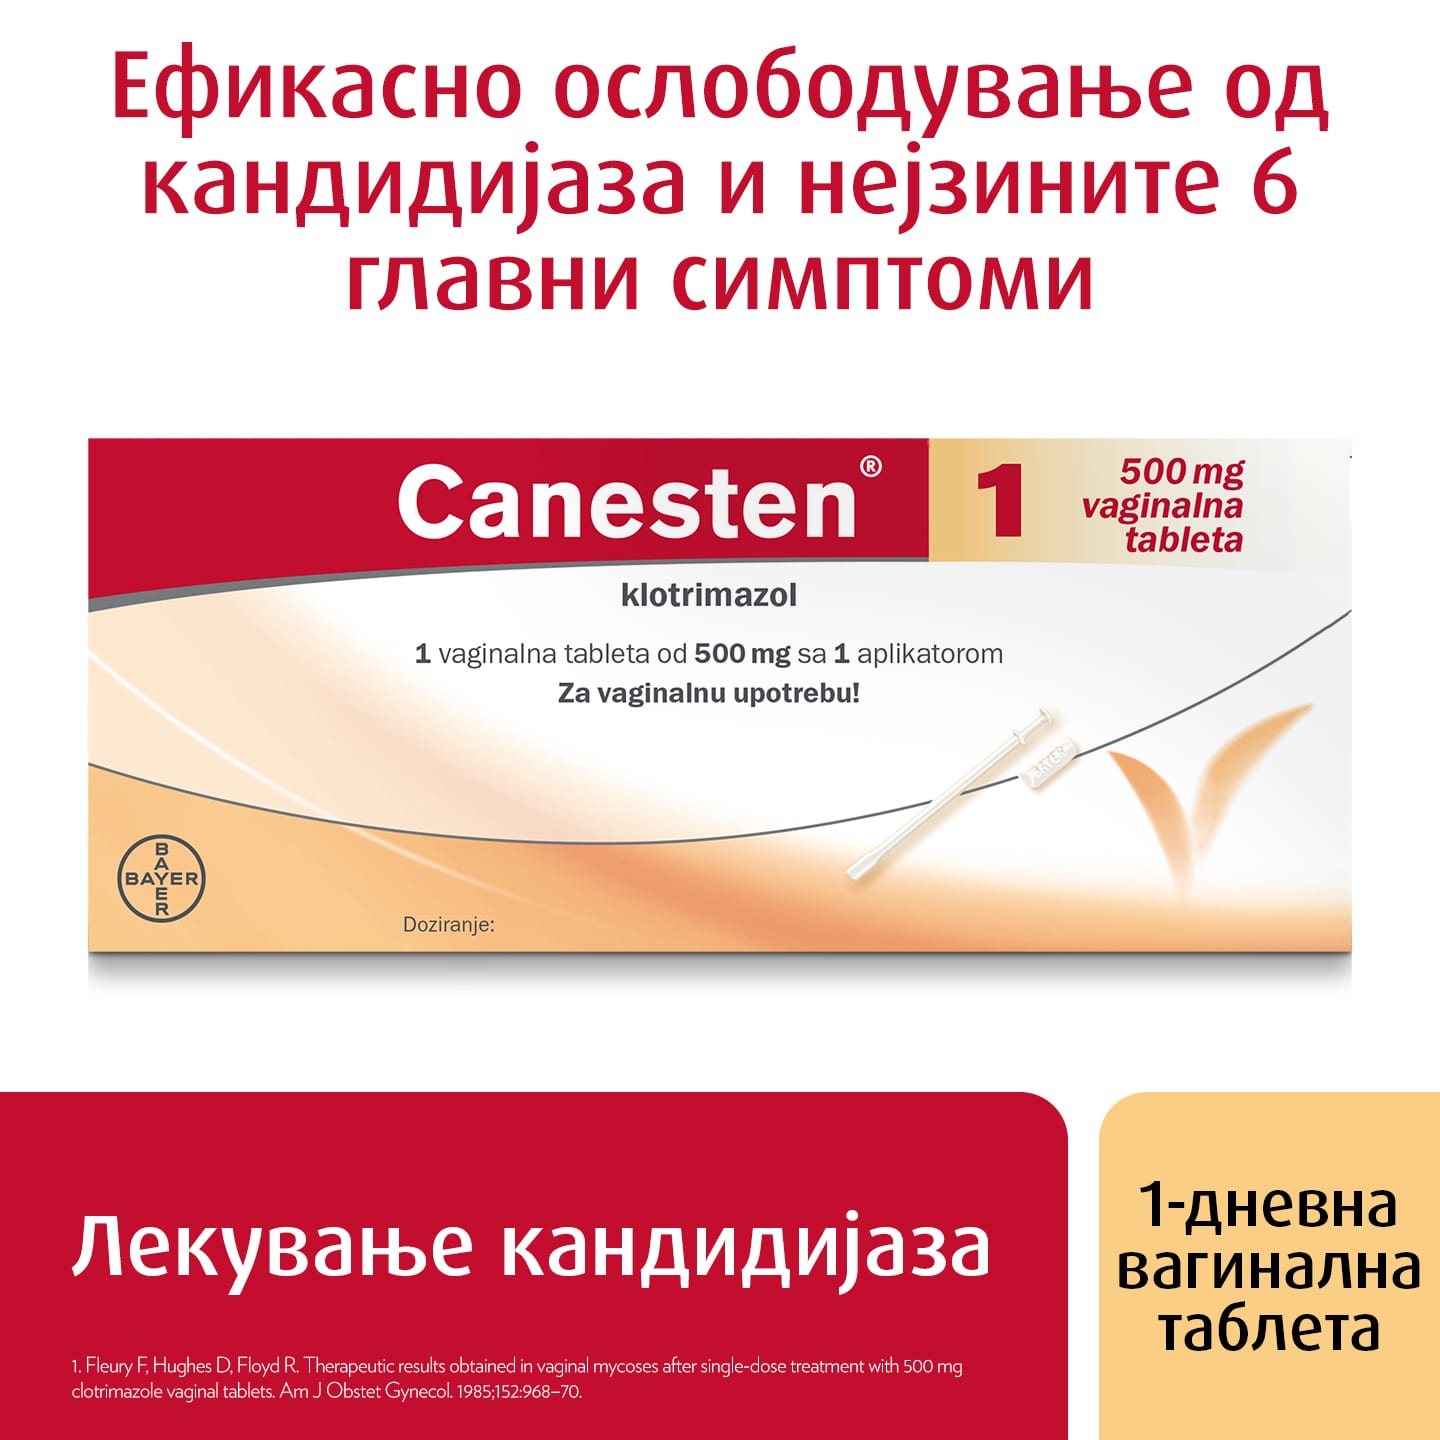 Лекување на кандидијаза: Канестен® 1 вагинална таблета, со натпис озгора: Ефикасно ослободување од кандидијаза и нејзините 6 главни симптоми